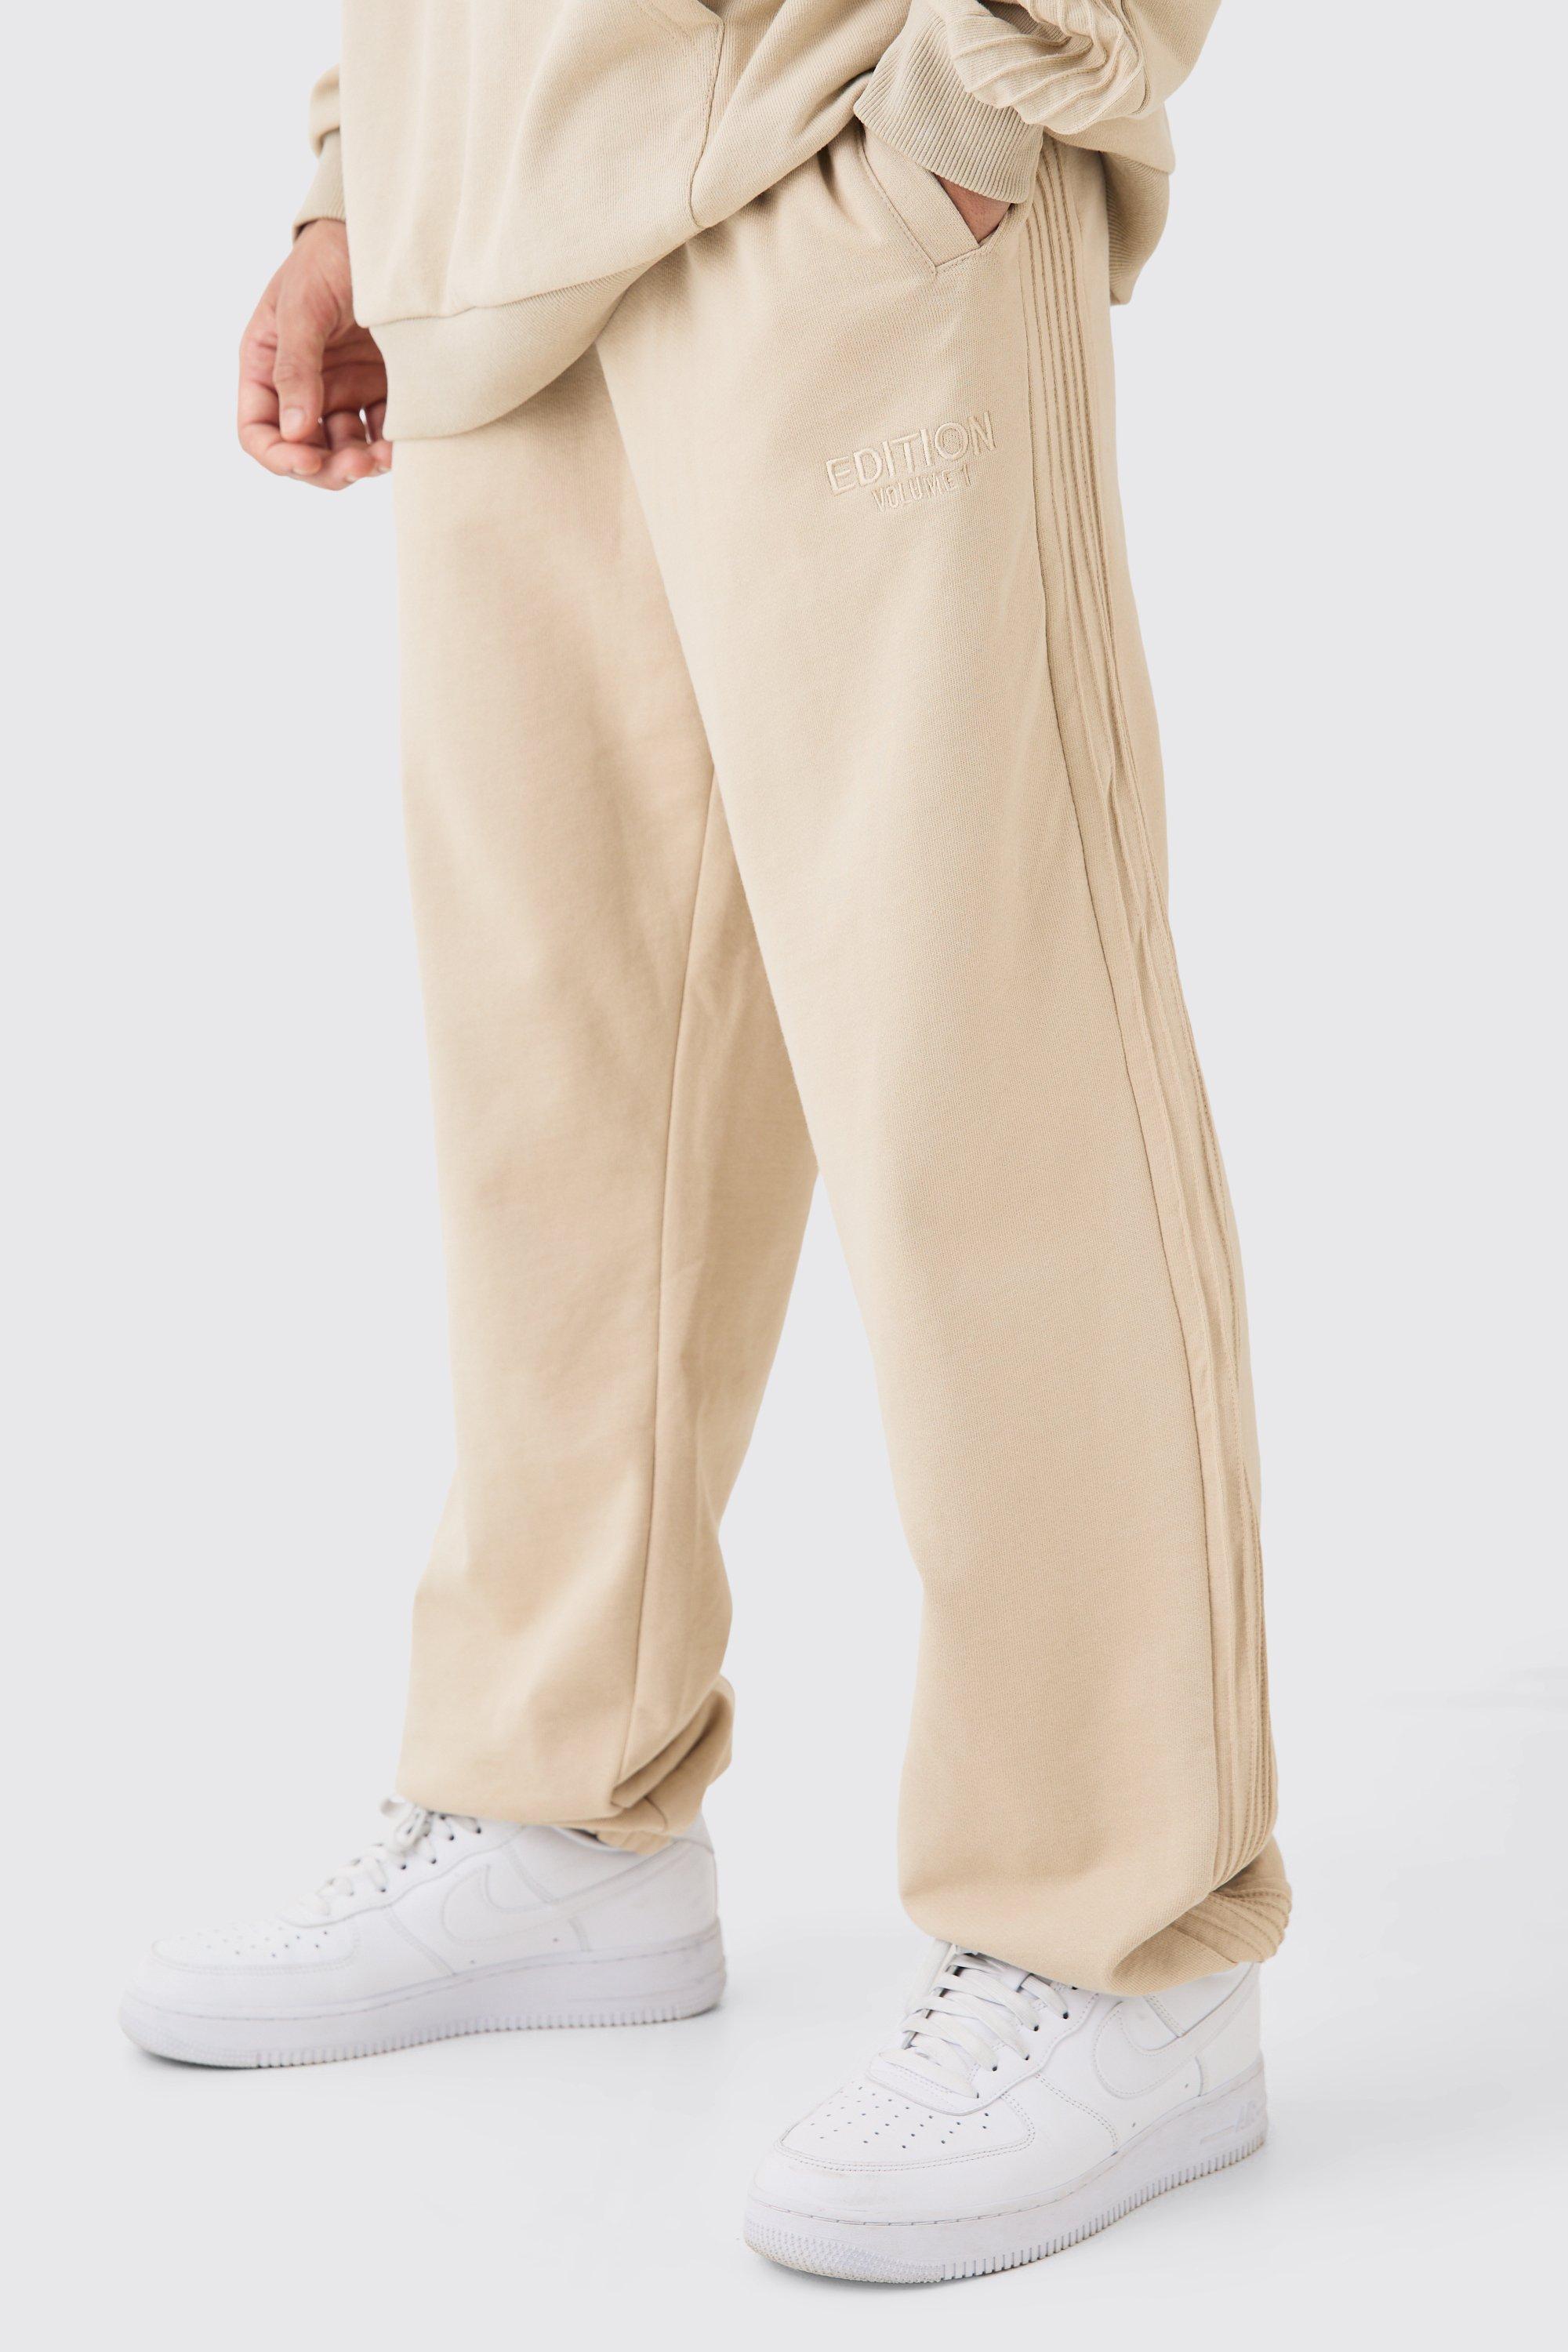 Image of Pantaloni tuta pesanti rilassati EDITION con spacco sul fondo, Beige